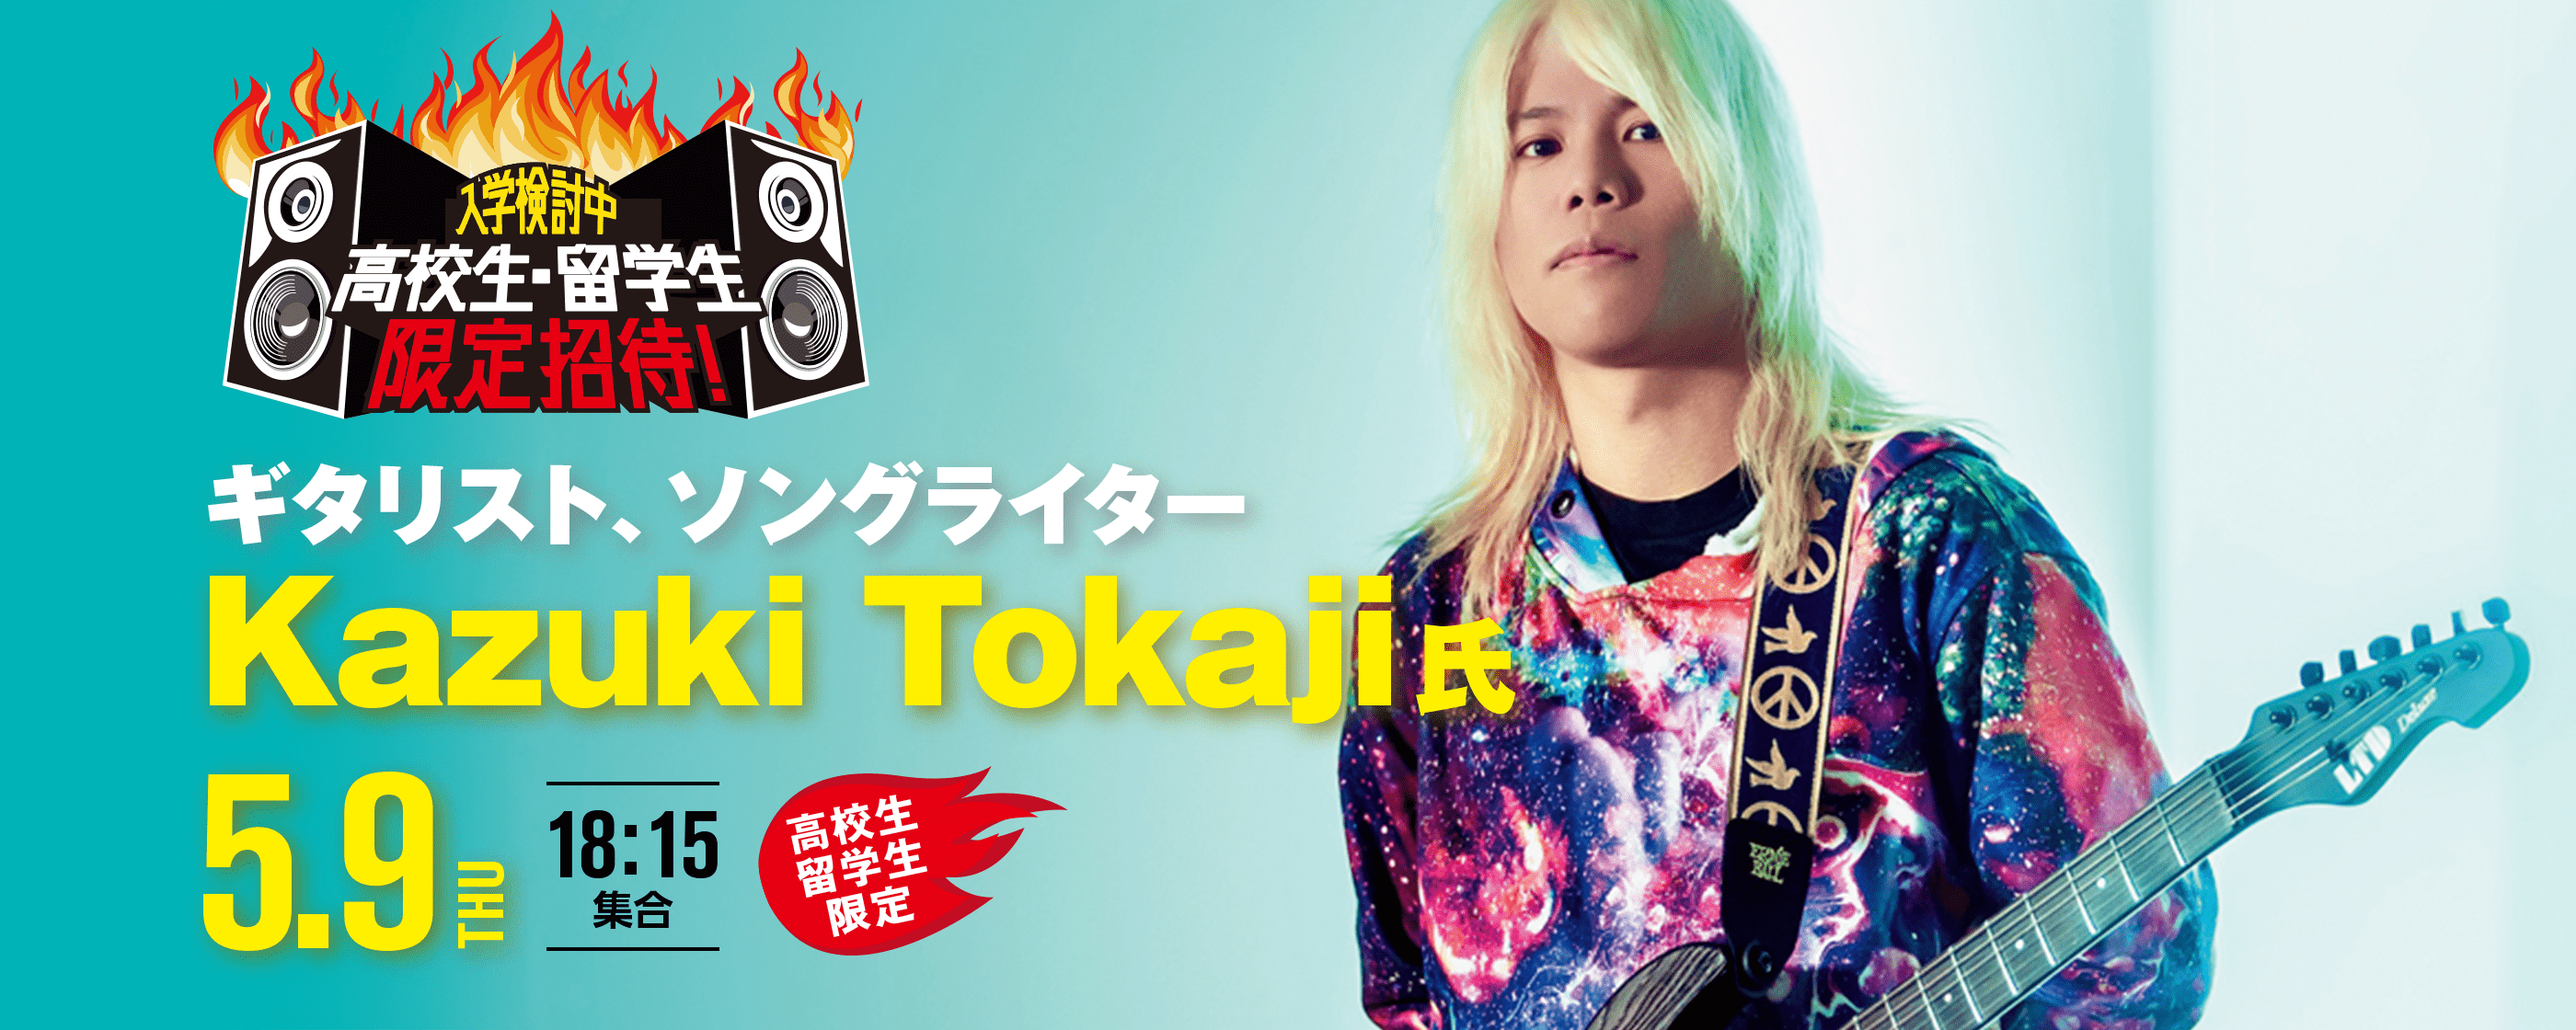 Kazuki Tokaji ギターセミナー 5.9(THU)